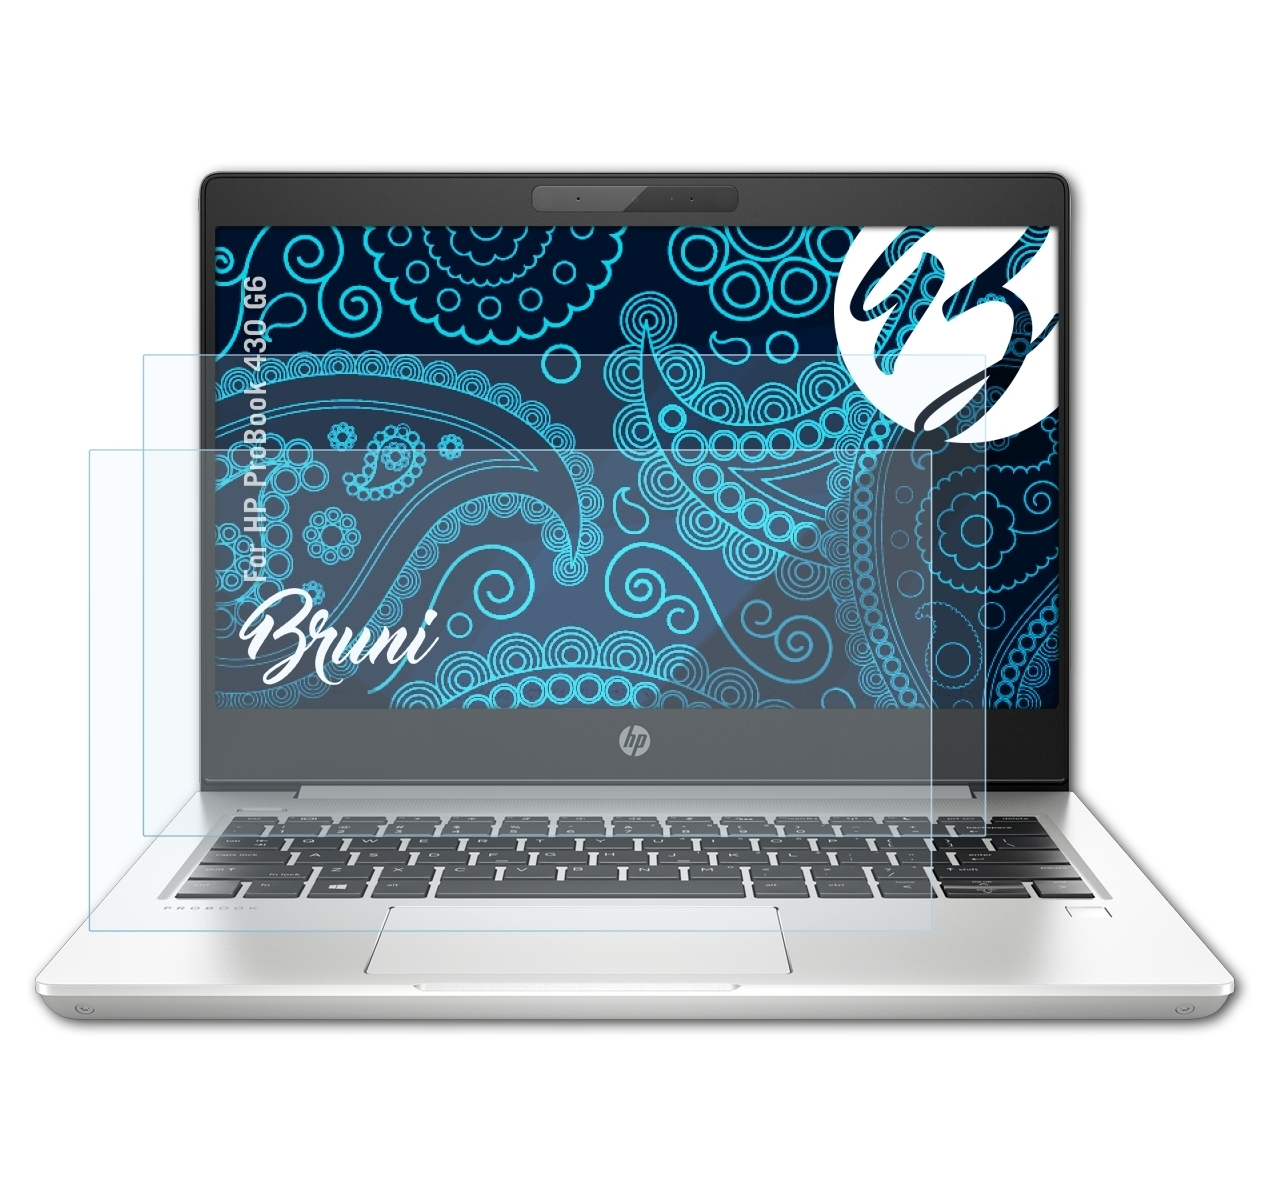 Schutzfolie(für 2x ProBook BRUNI G6) HP Basics-Clear 430